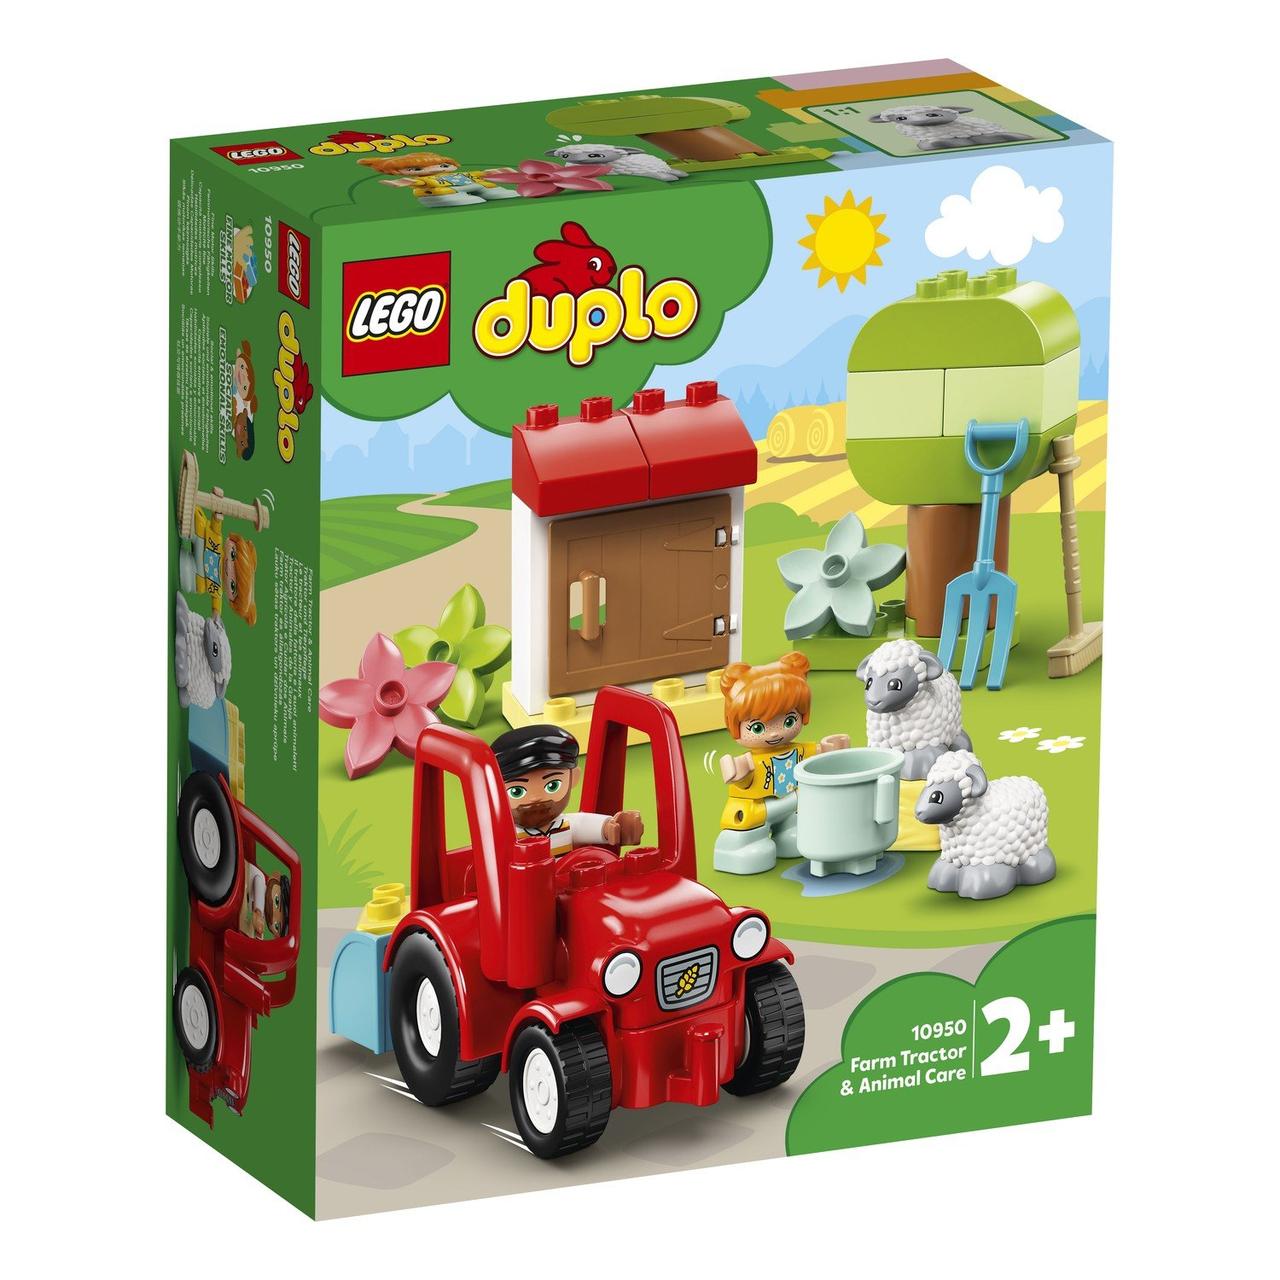 10950 Lego Duplo Фермерский трактор и животные, Лего Дупло